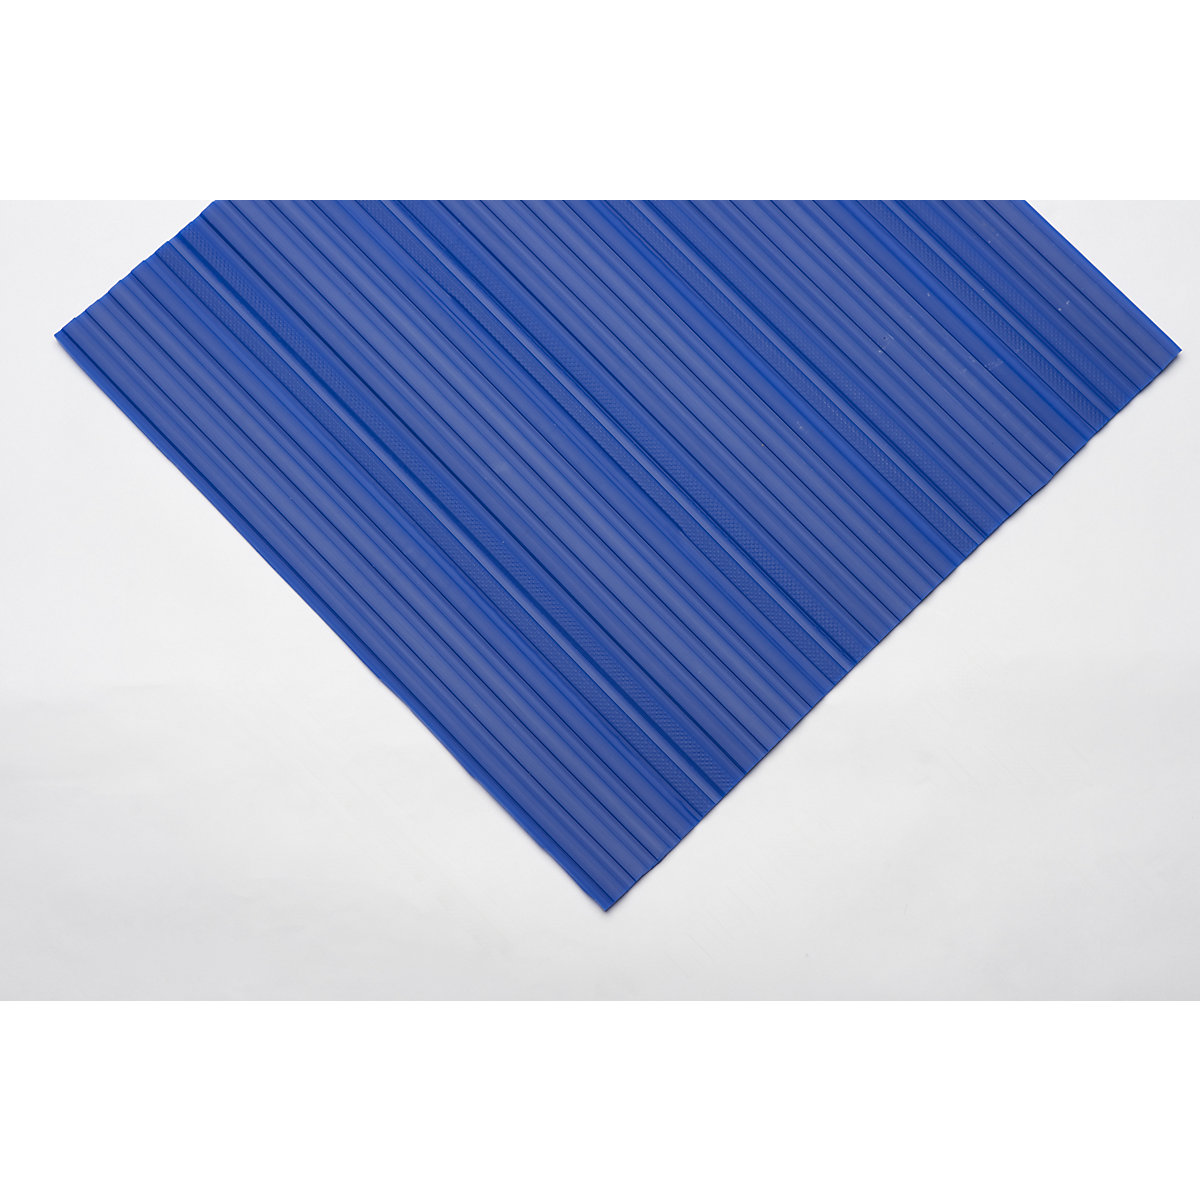 Weich-PVC-Läufer, mit geschlossener Oberfläche, 10 m Rolle, blau, Breite 600 mm-5